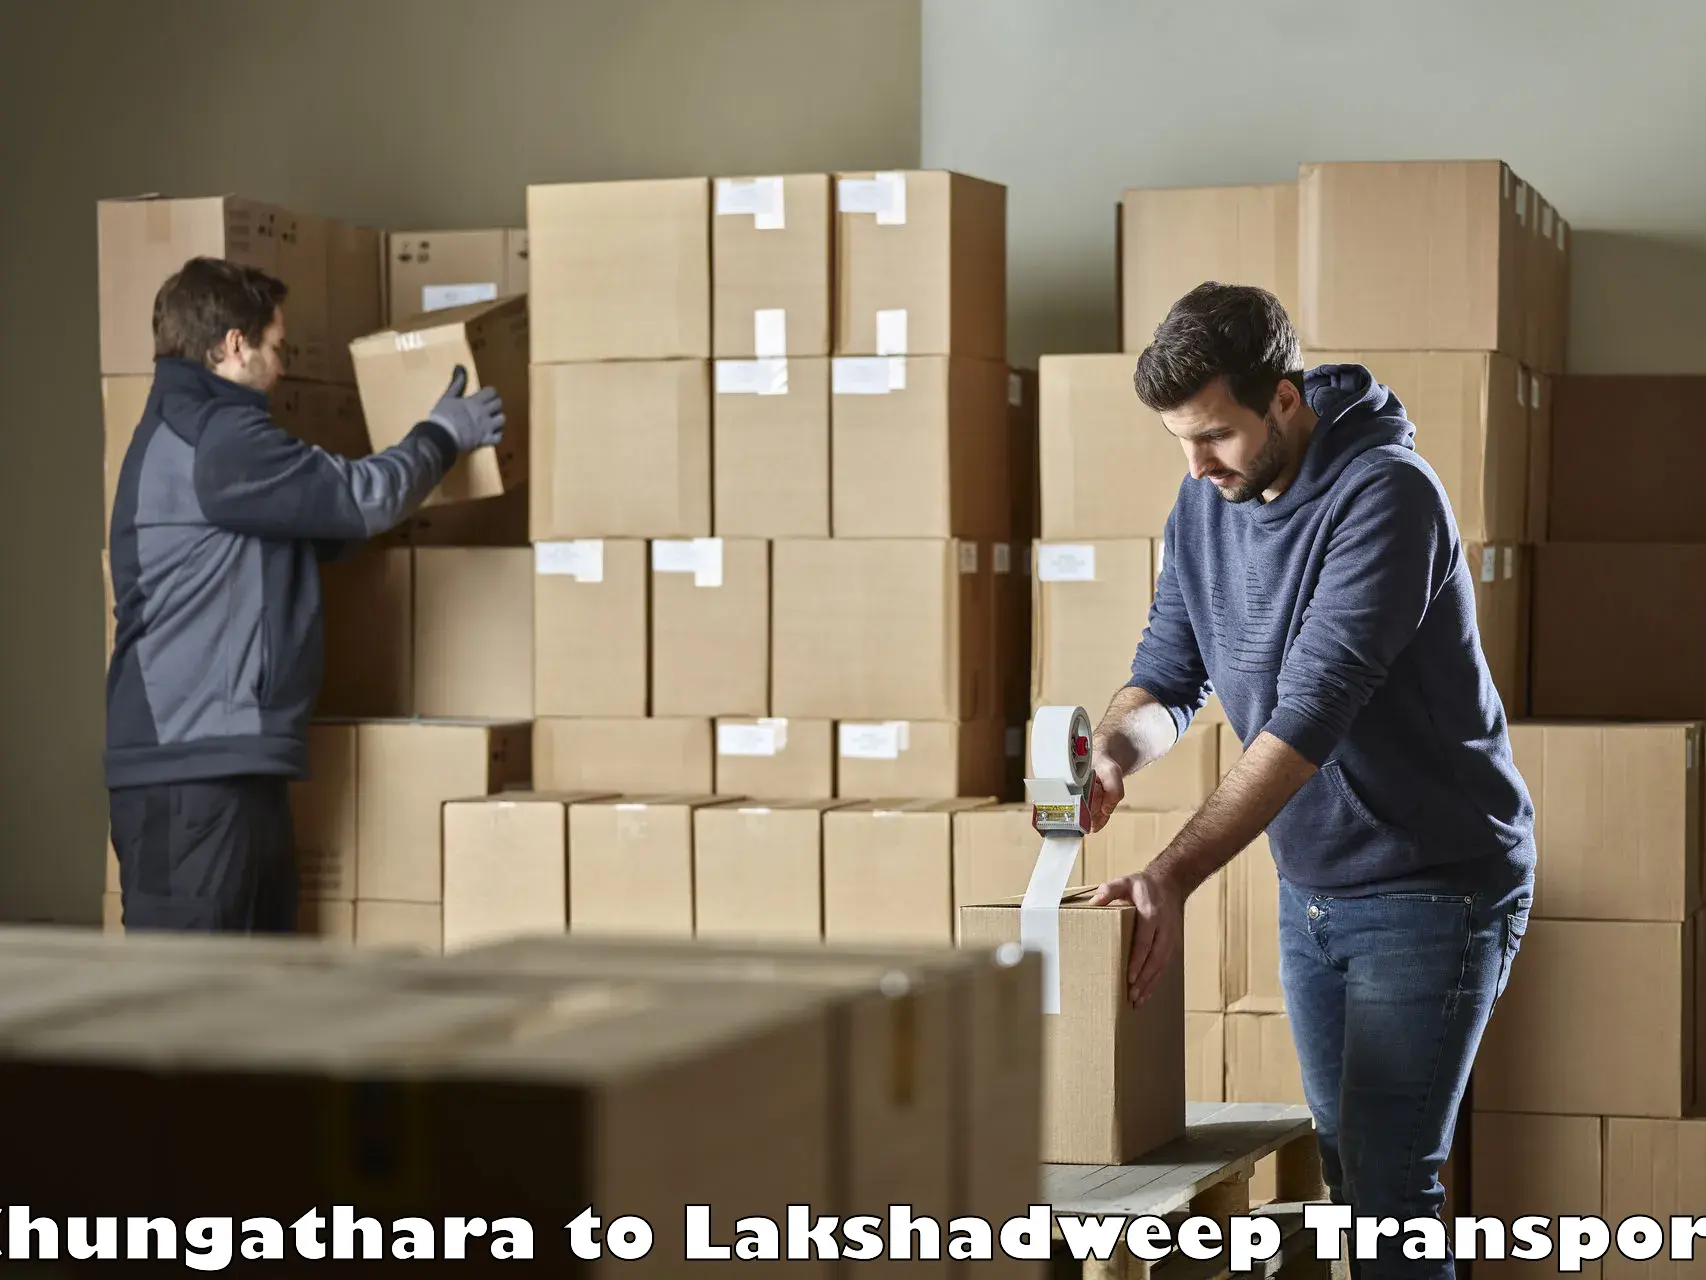 Shipping partner Chungathara to Lakshadweep